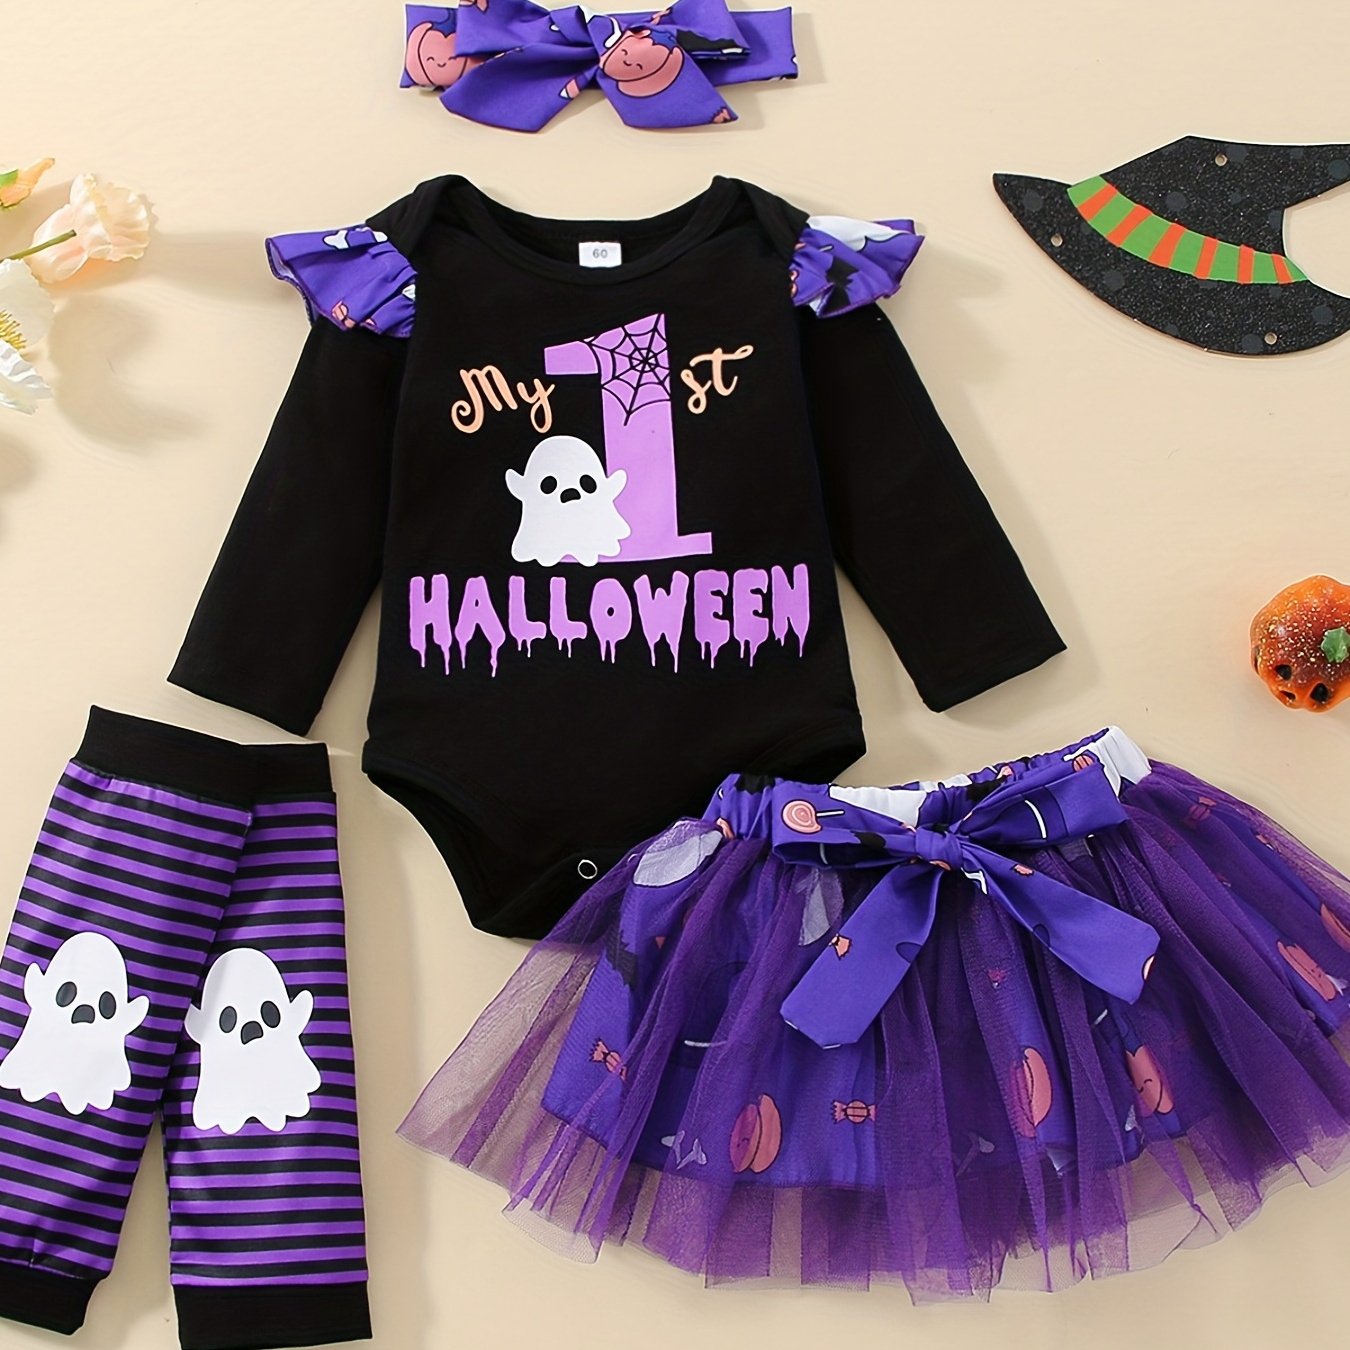 

Ensemble de vêtements d'Halloween pour bébés filles comprenant une jupe tutu, une barboteuse imprimée de fantômes, un bandeau et des jambières pour les enfants de 0 à 18 mois.